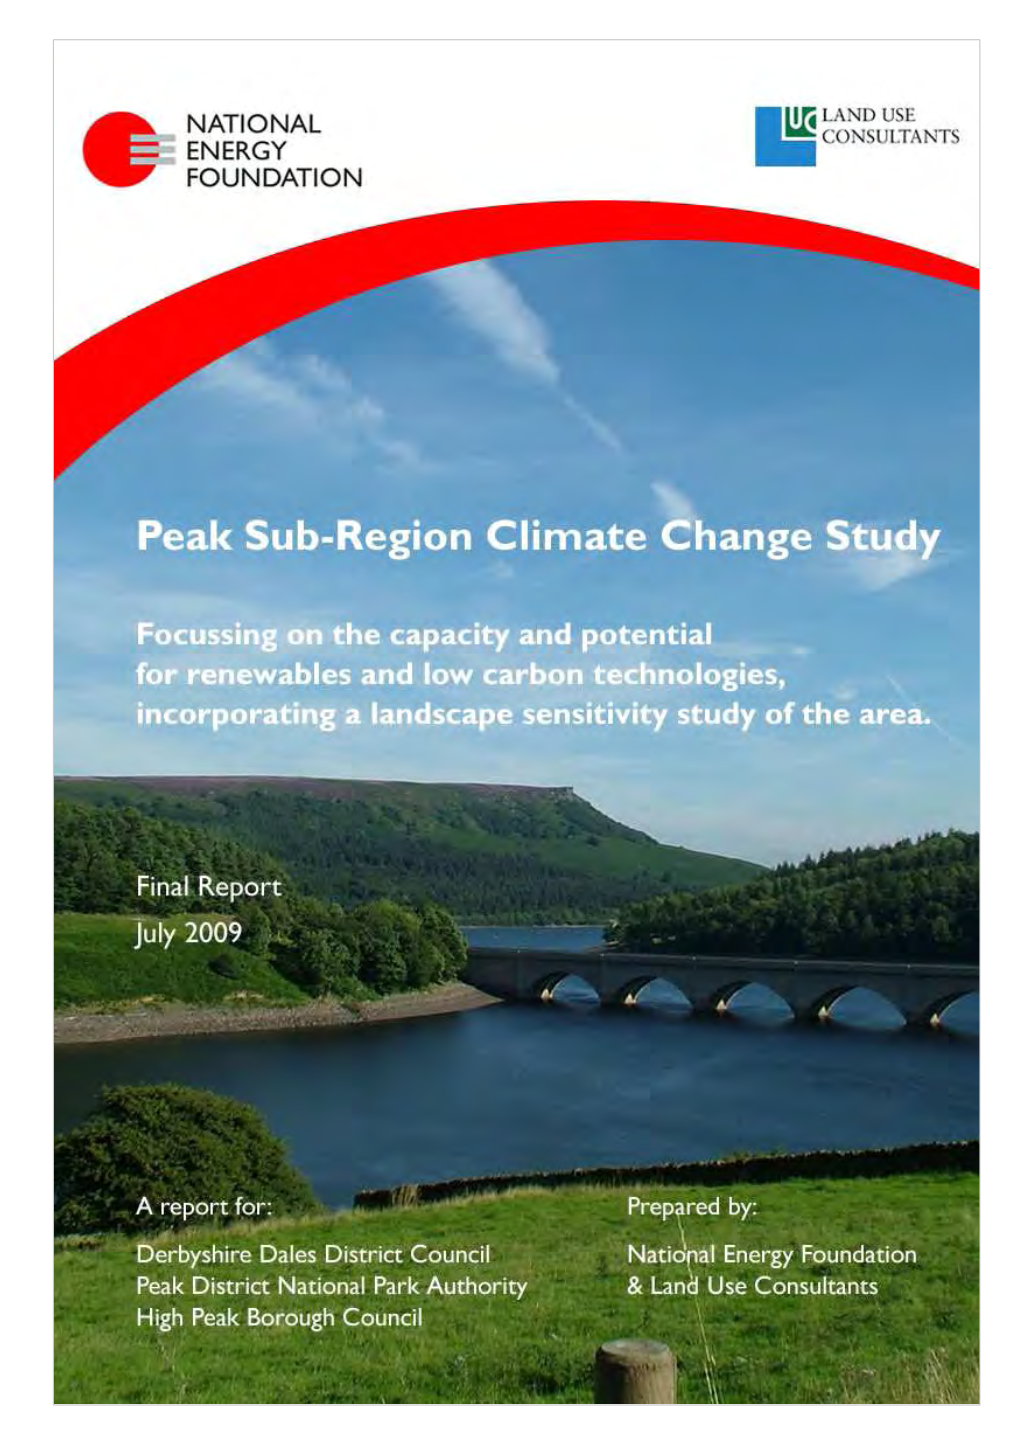 Peaks Sub-Region Climate Change Study